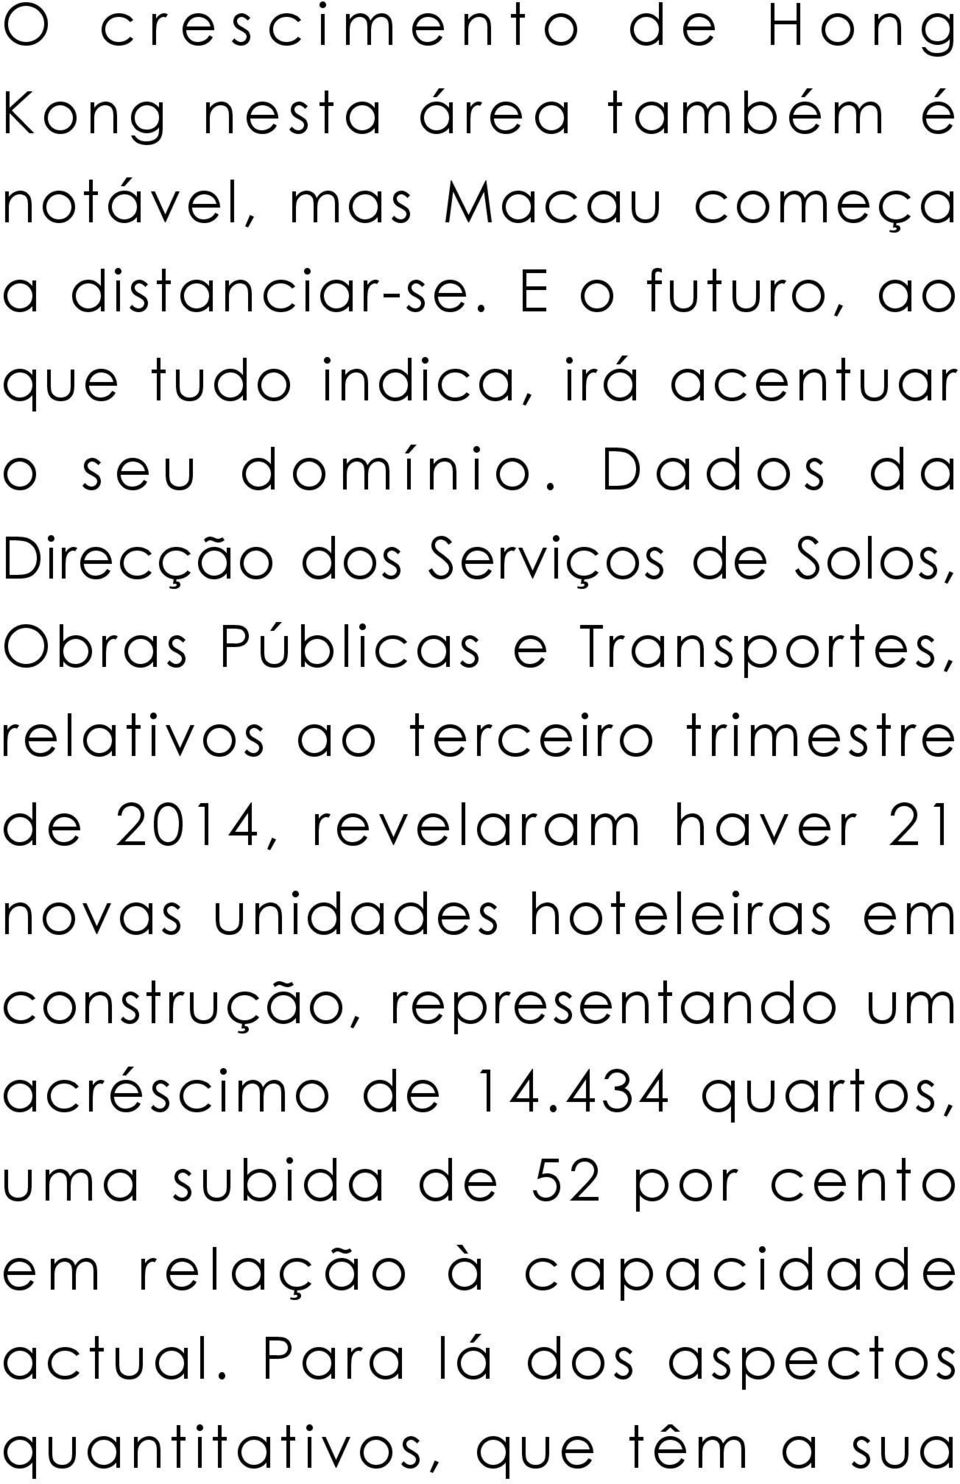 Dados da Direcção dos Serviços de Solos, Obras Públicas e Transportes, relativos ao terceiro trimestre de 2014,